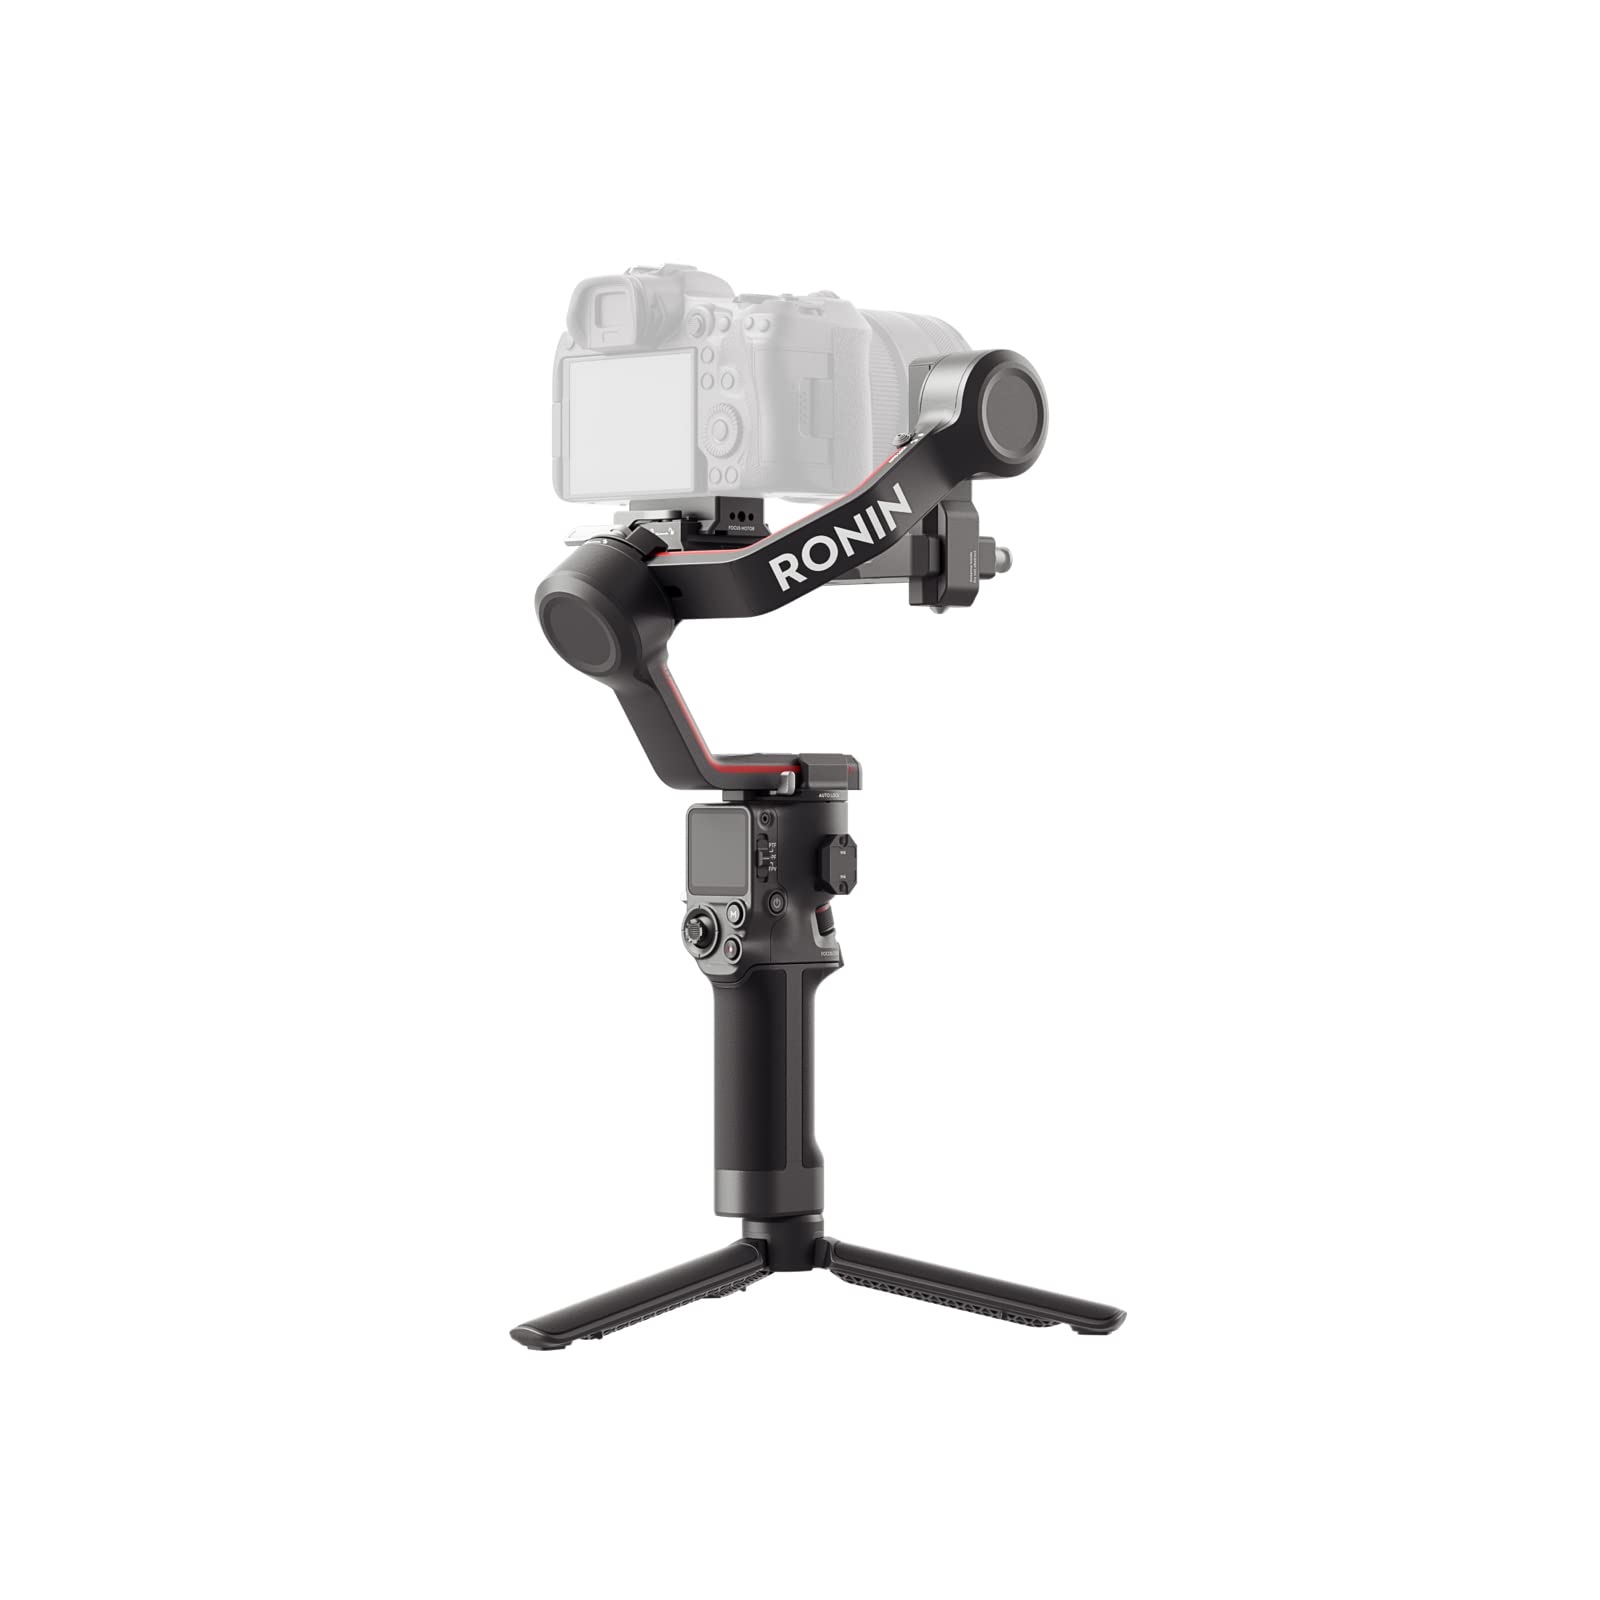 DJI RS 3 – 3-Achsen Gimbal-Stabilisator für DSLR- und spiegellose Kameras, 3 kg Zuladung, automatische Achsensperren, 1,8" Touchscreen, RS-Stabilisierungsalgorithmus der 3. Generation, schwarz